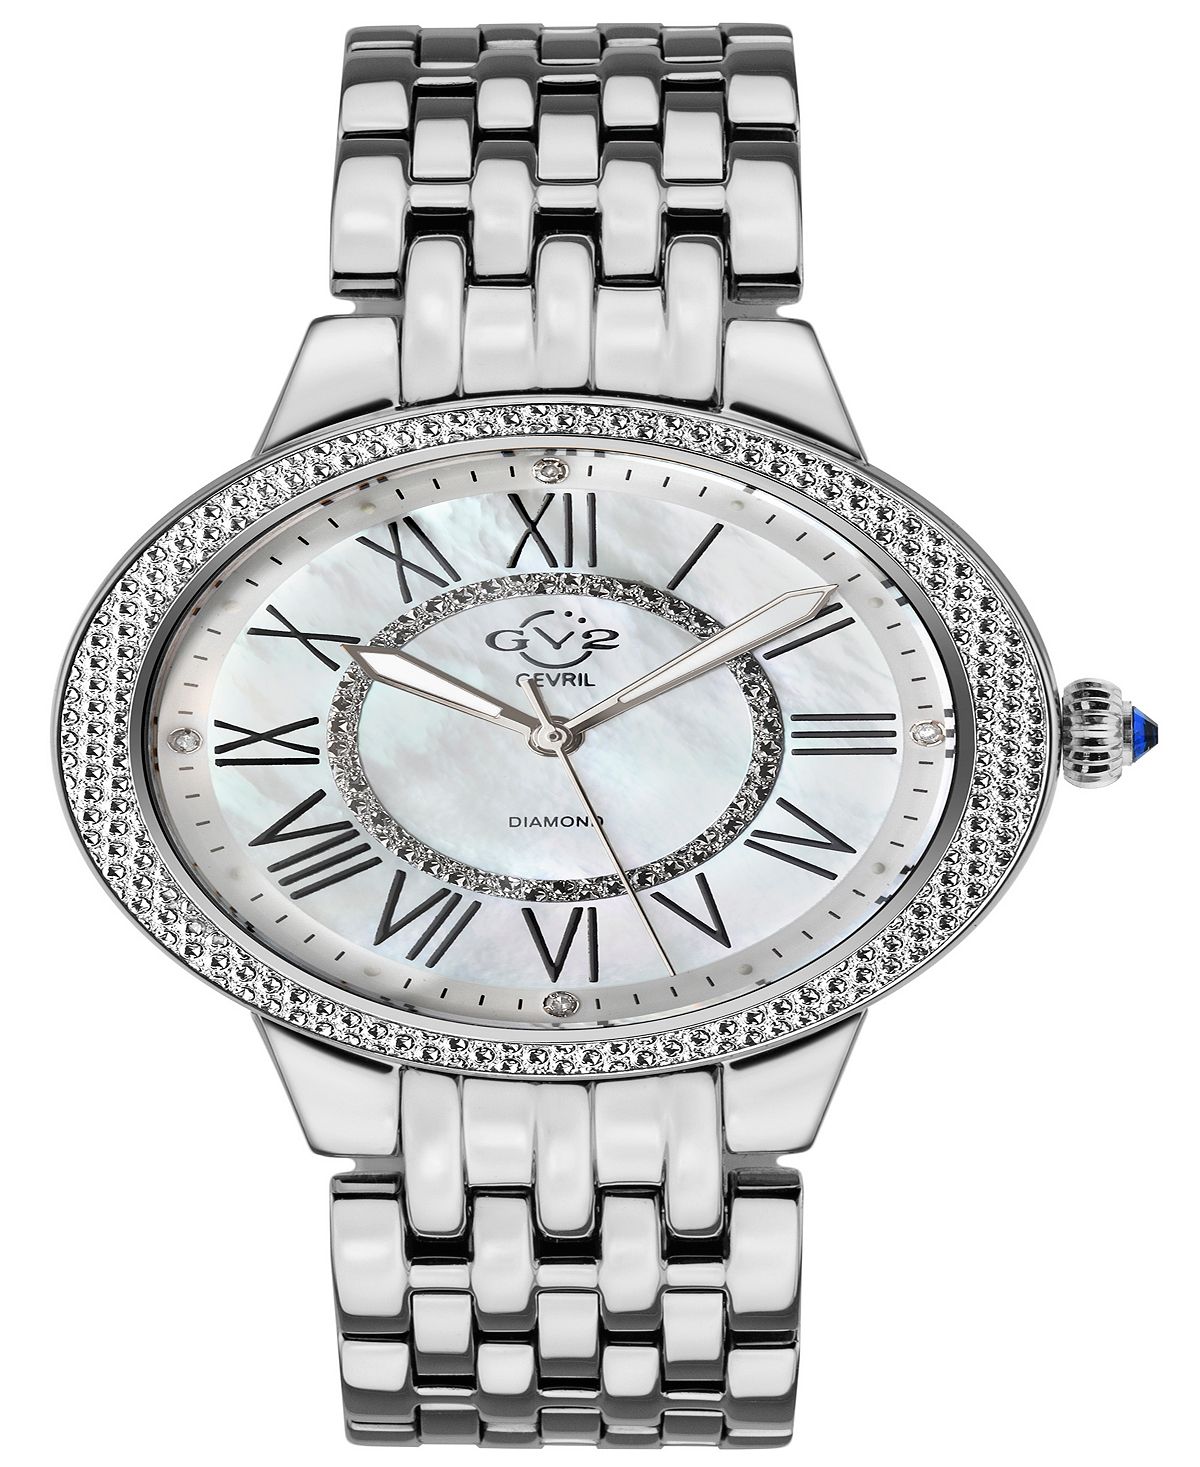 Женские часы Astor II швейцарские кварцевые серебристого цвета с браслетом из нержавеющей стали 38 мм Gevril женские часы olympia серебристого цвета из нержавеющей стали 38 мм jbw